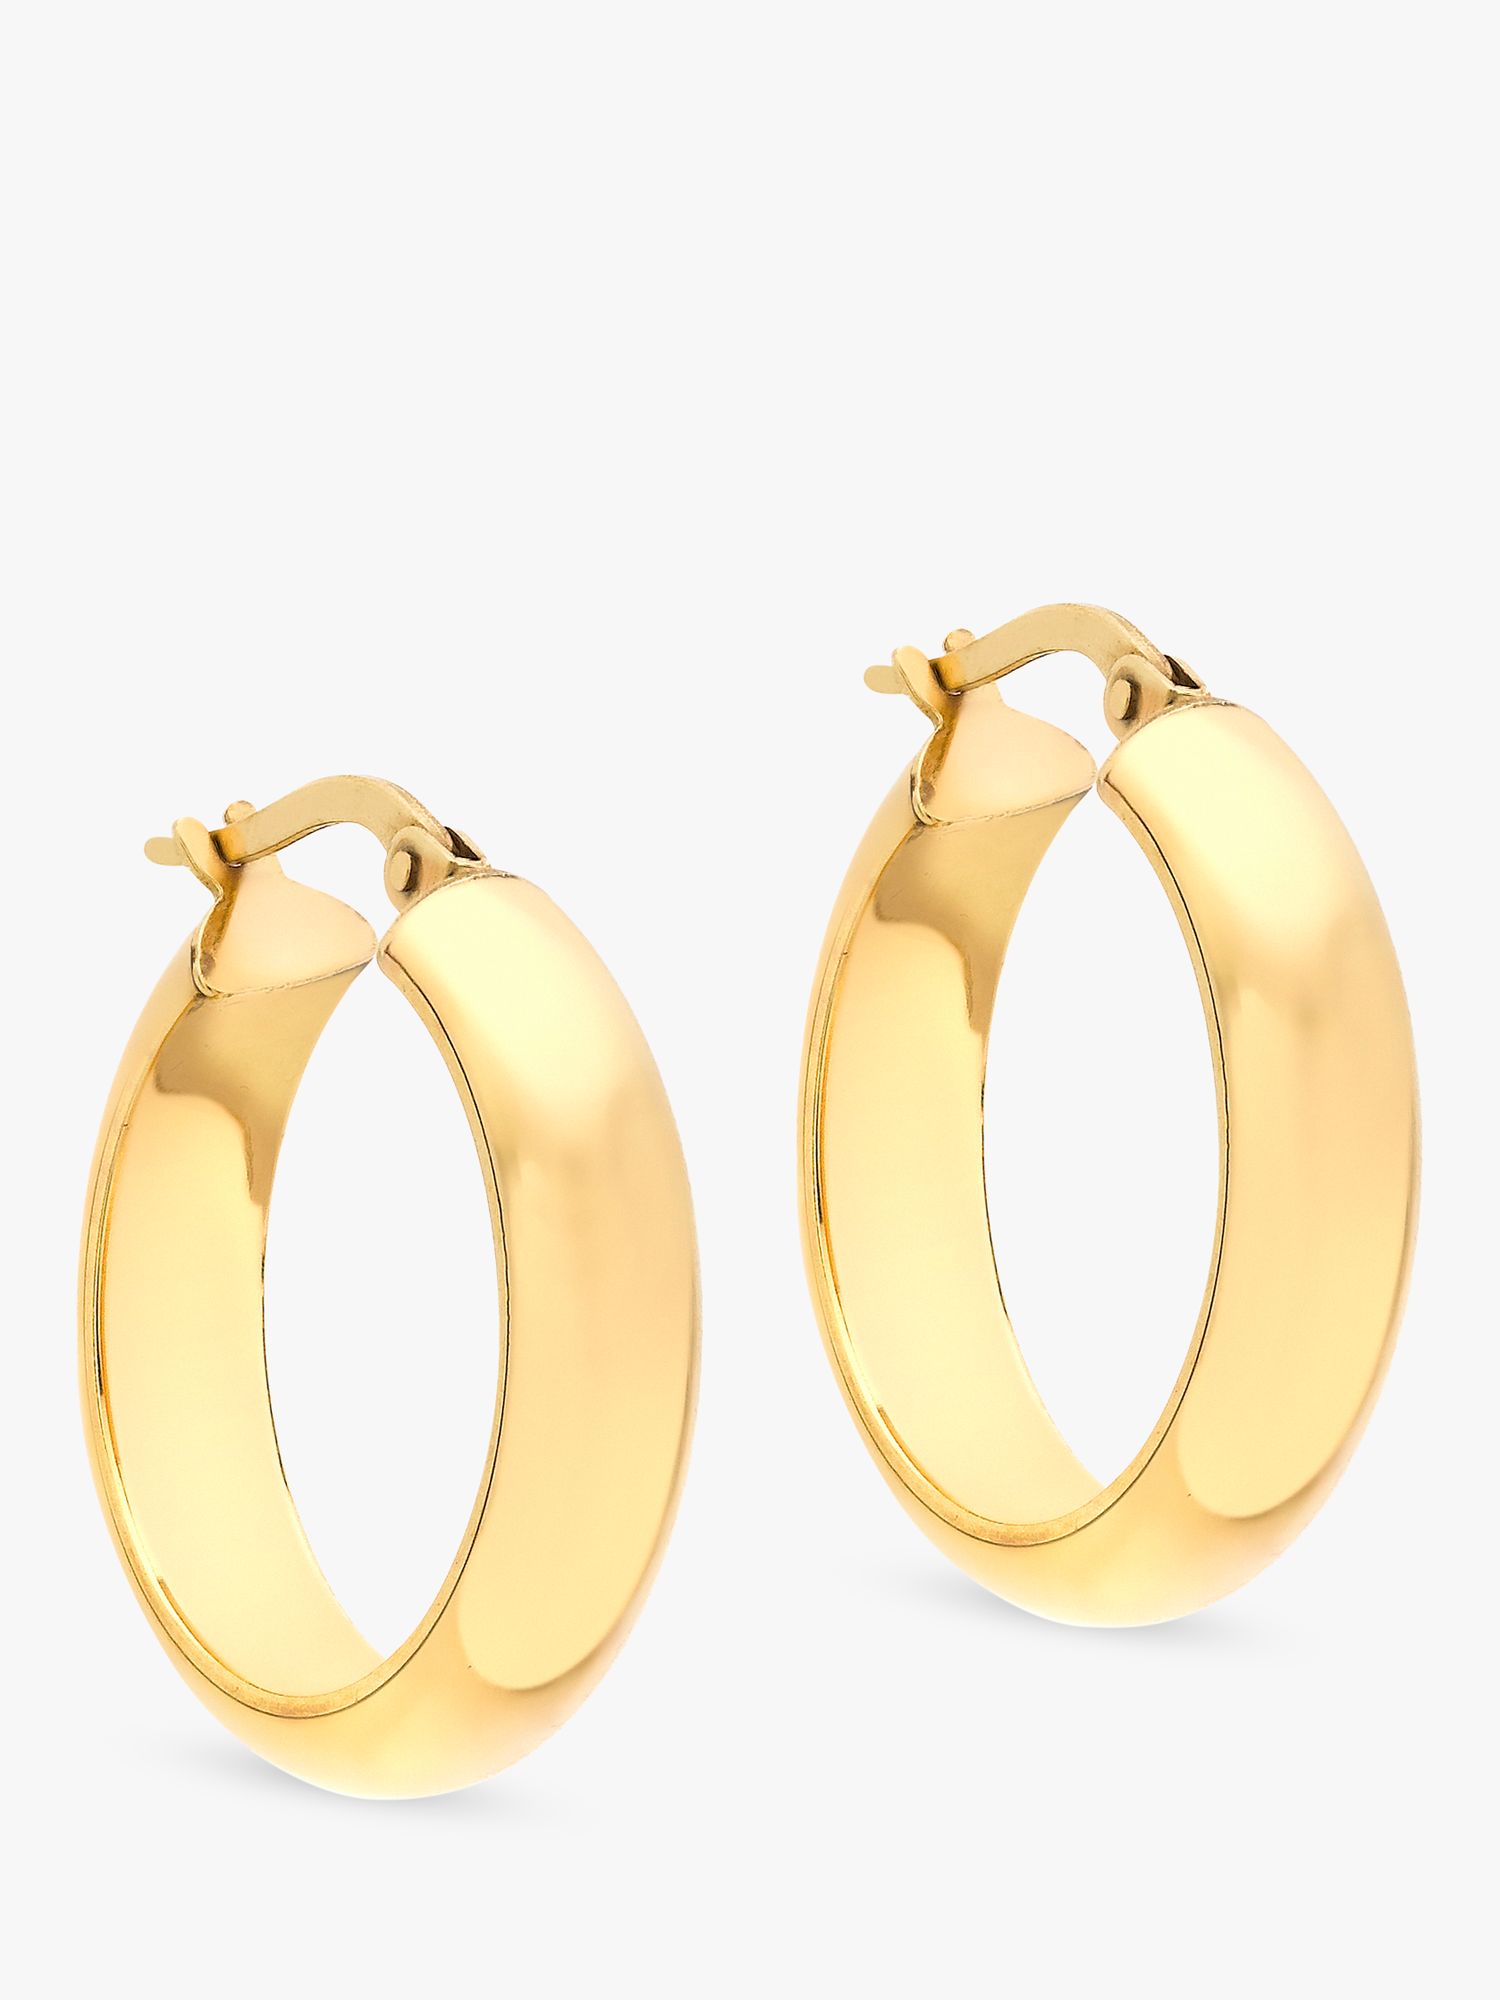 Image Gang creole hoop earrings in gold plate